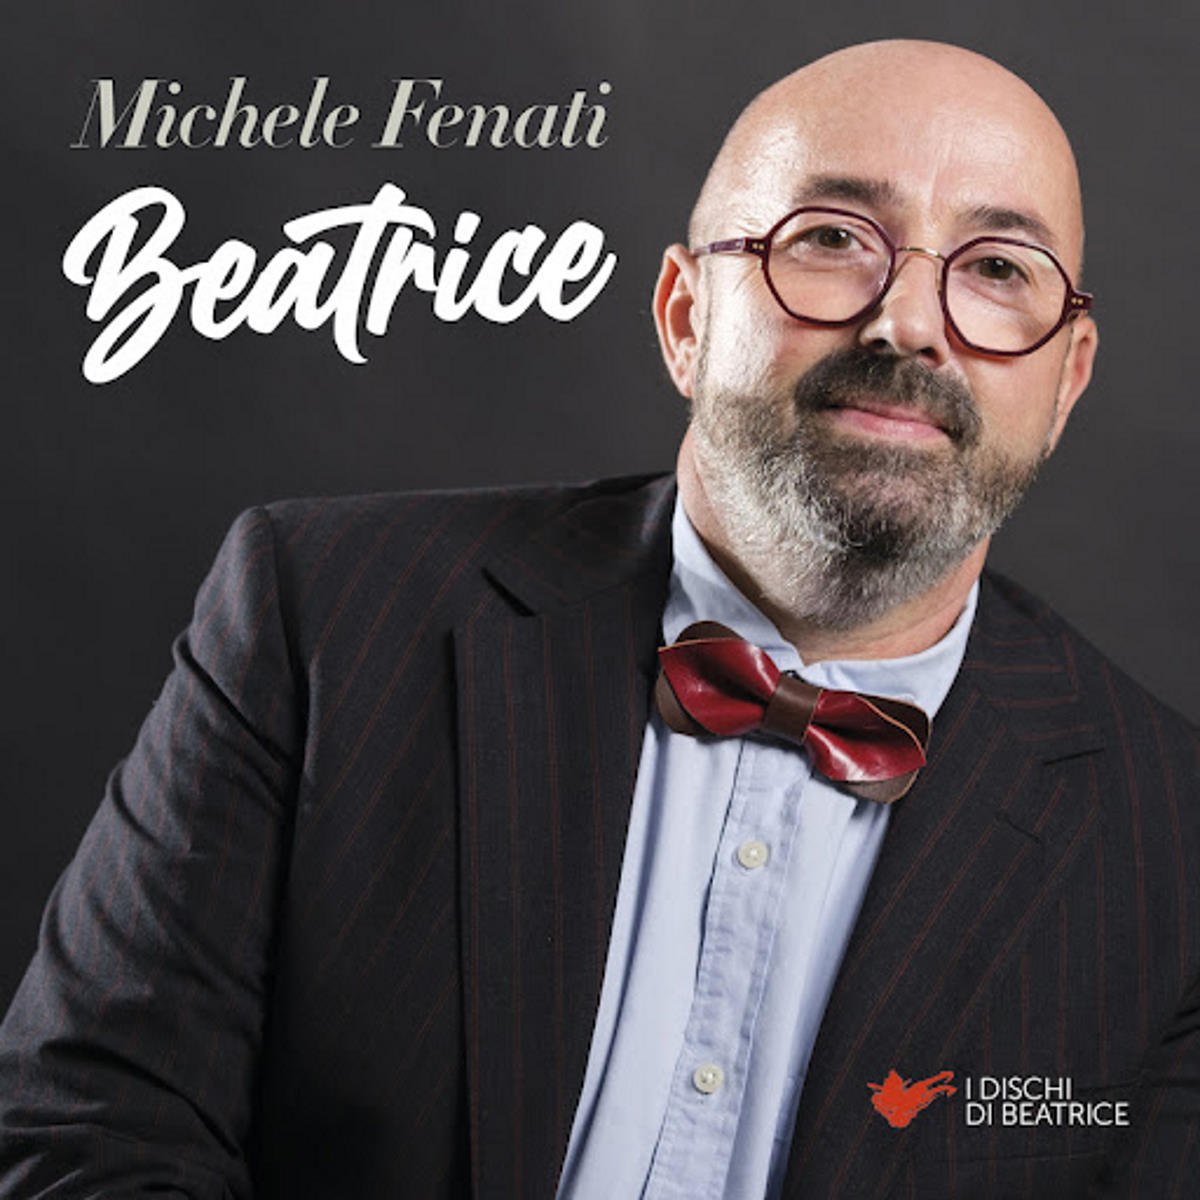 MICHELE FENATI, “Beatrice” è il nuovo brano arricchito da un quartetto d’archi estratto dall’album in uscita a ottobre